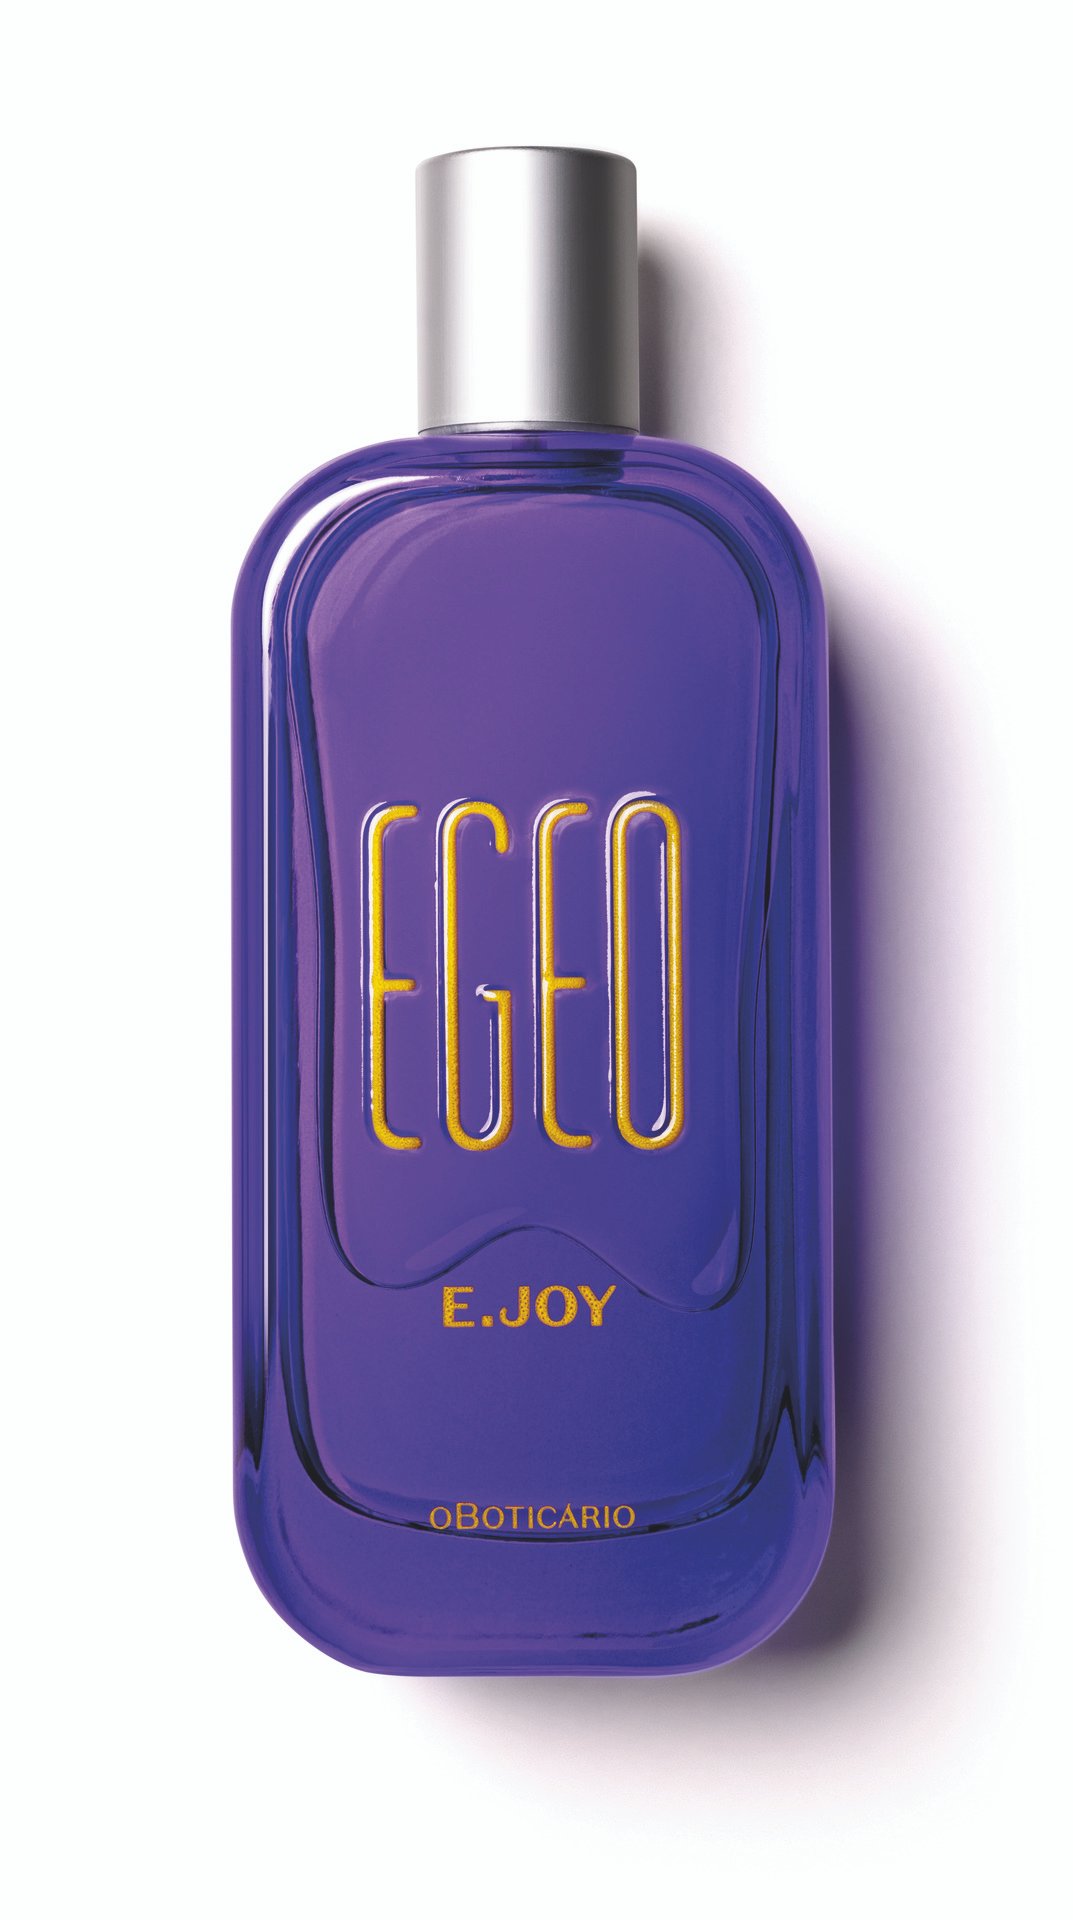 Você está visualizando atualmente Egeo, a marca oficial de perfumaria do Lollapalooza BR 24, lança fragrância inspirada no mood dos festivais de música